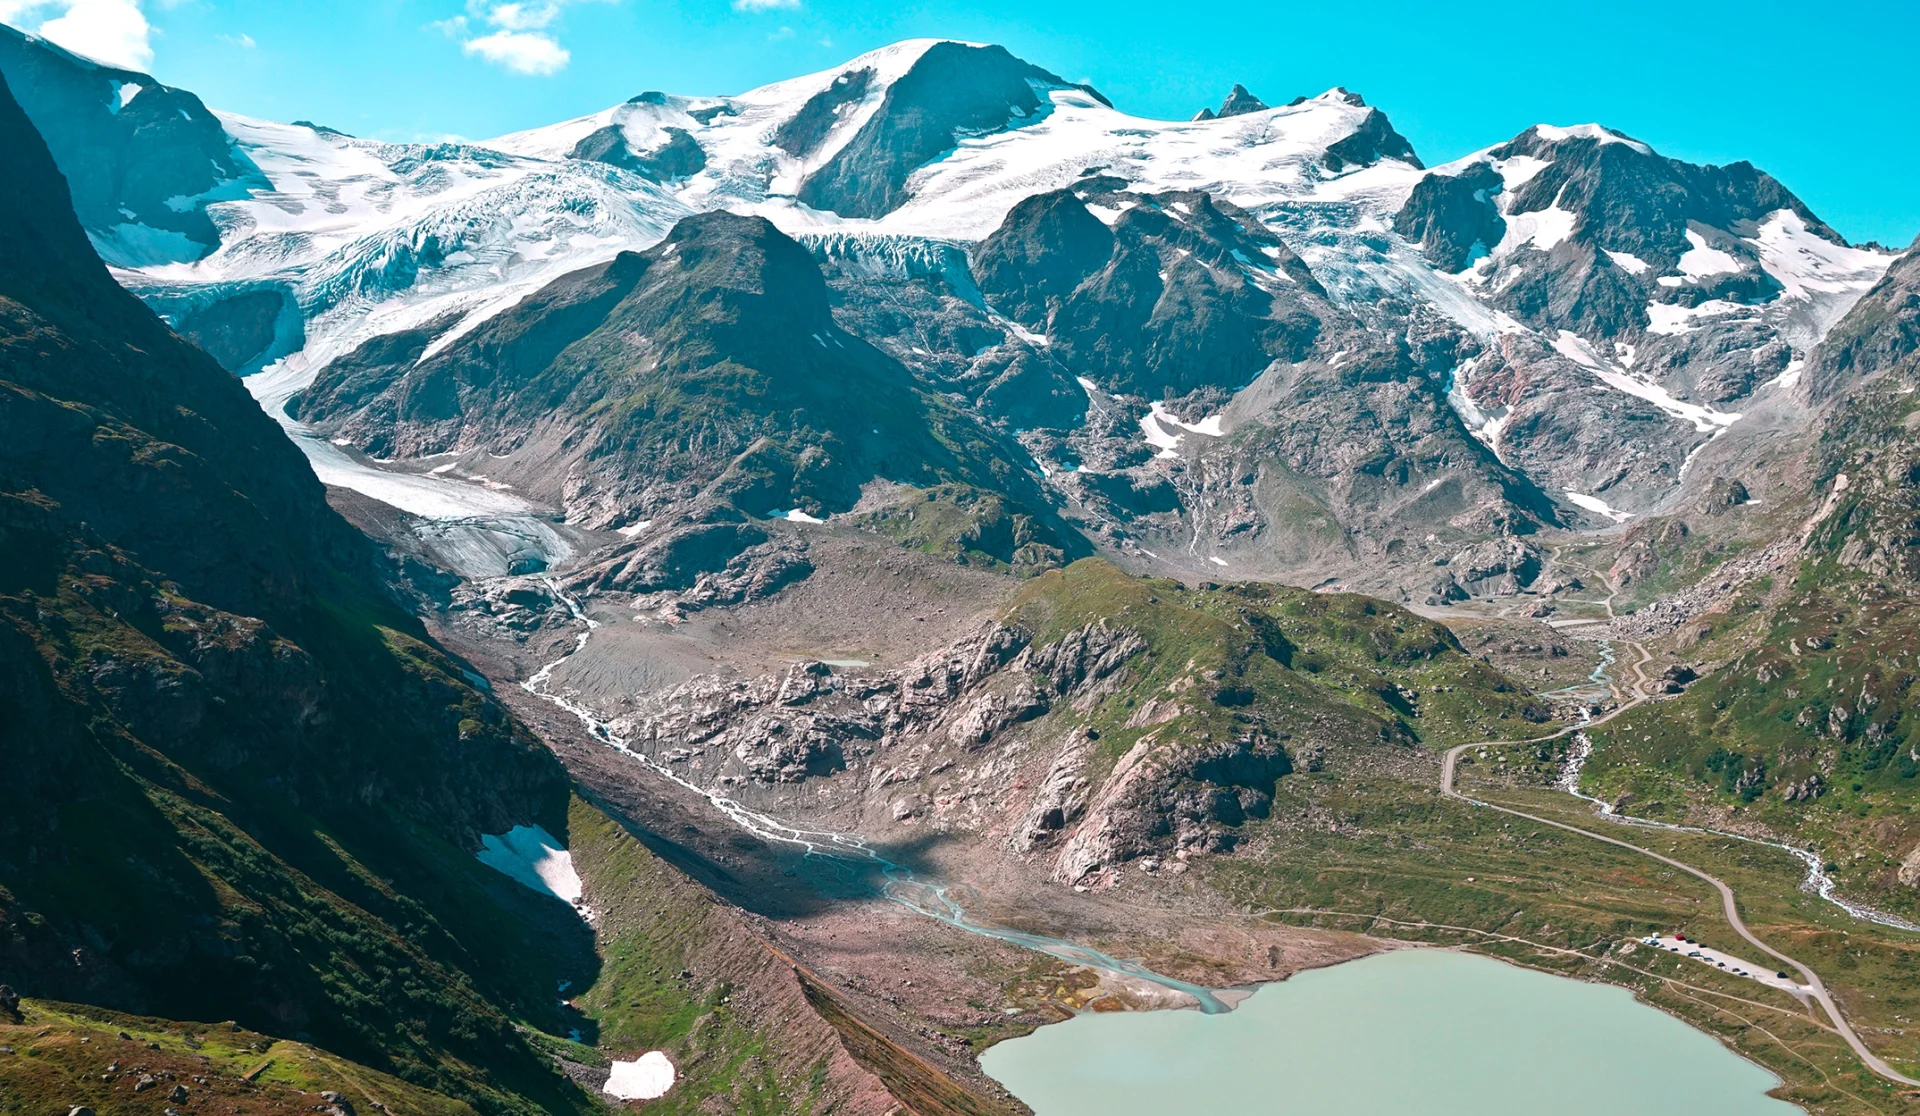 Der Steingletscher im Gadmertal, Berner Oberland. Aufgrund des Gletscherrückgangs ist ein See entstanden.